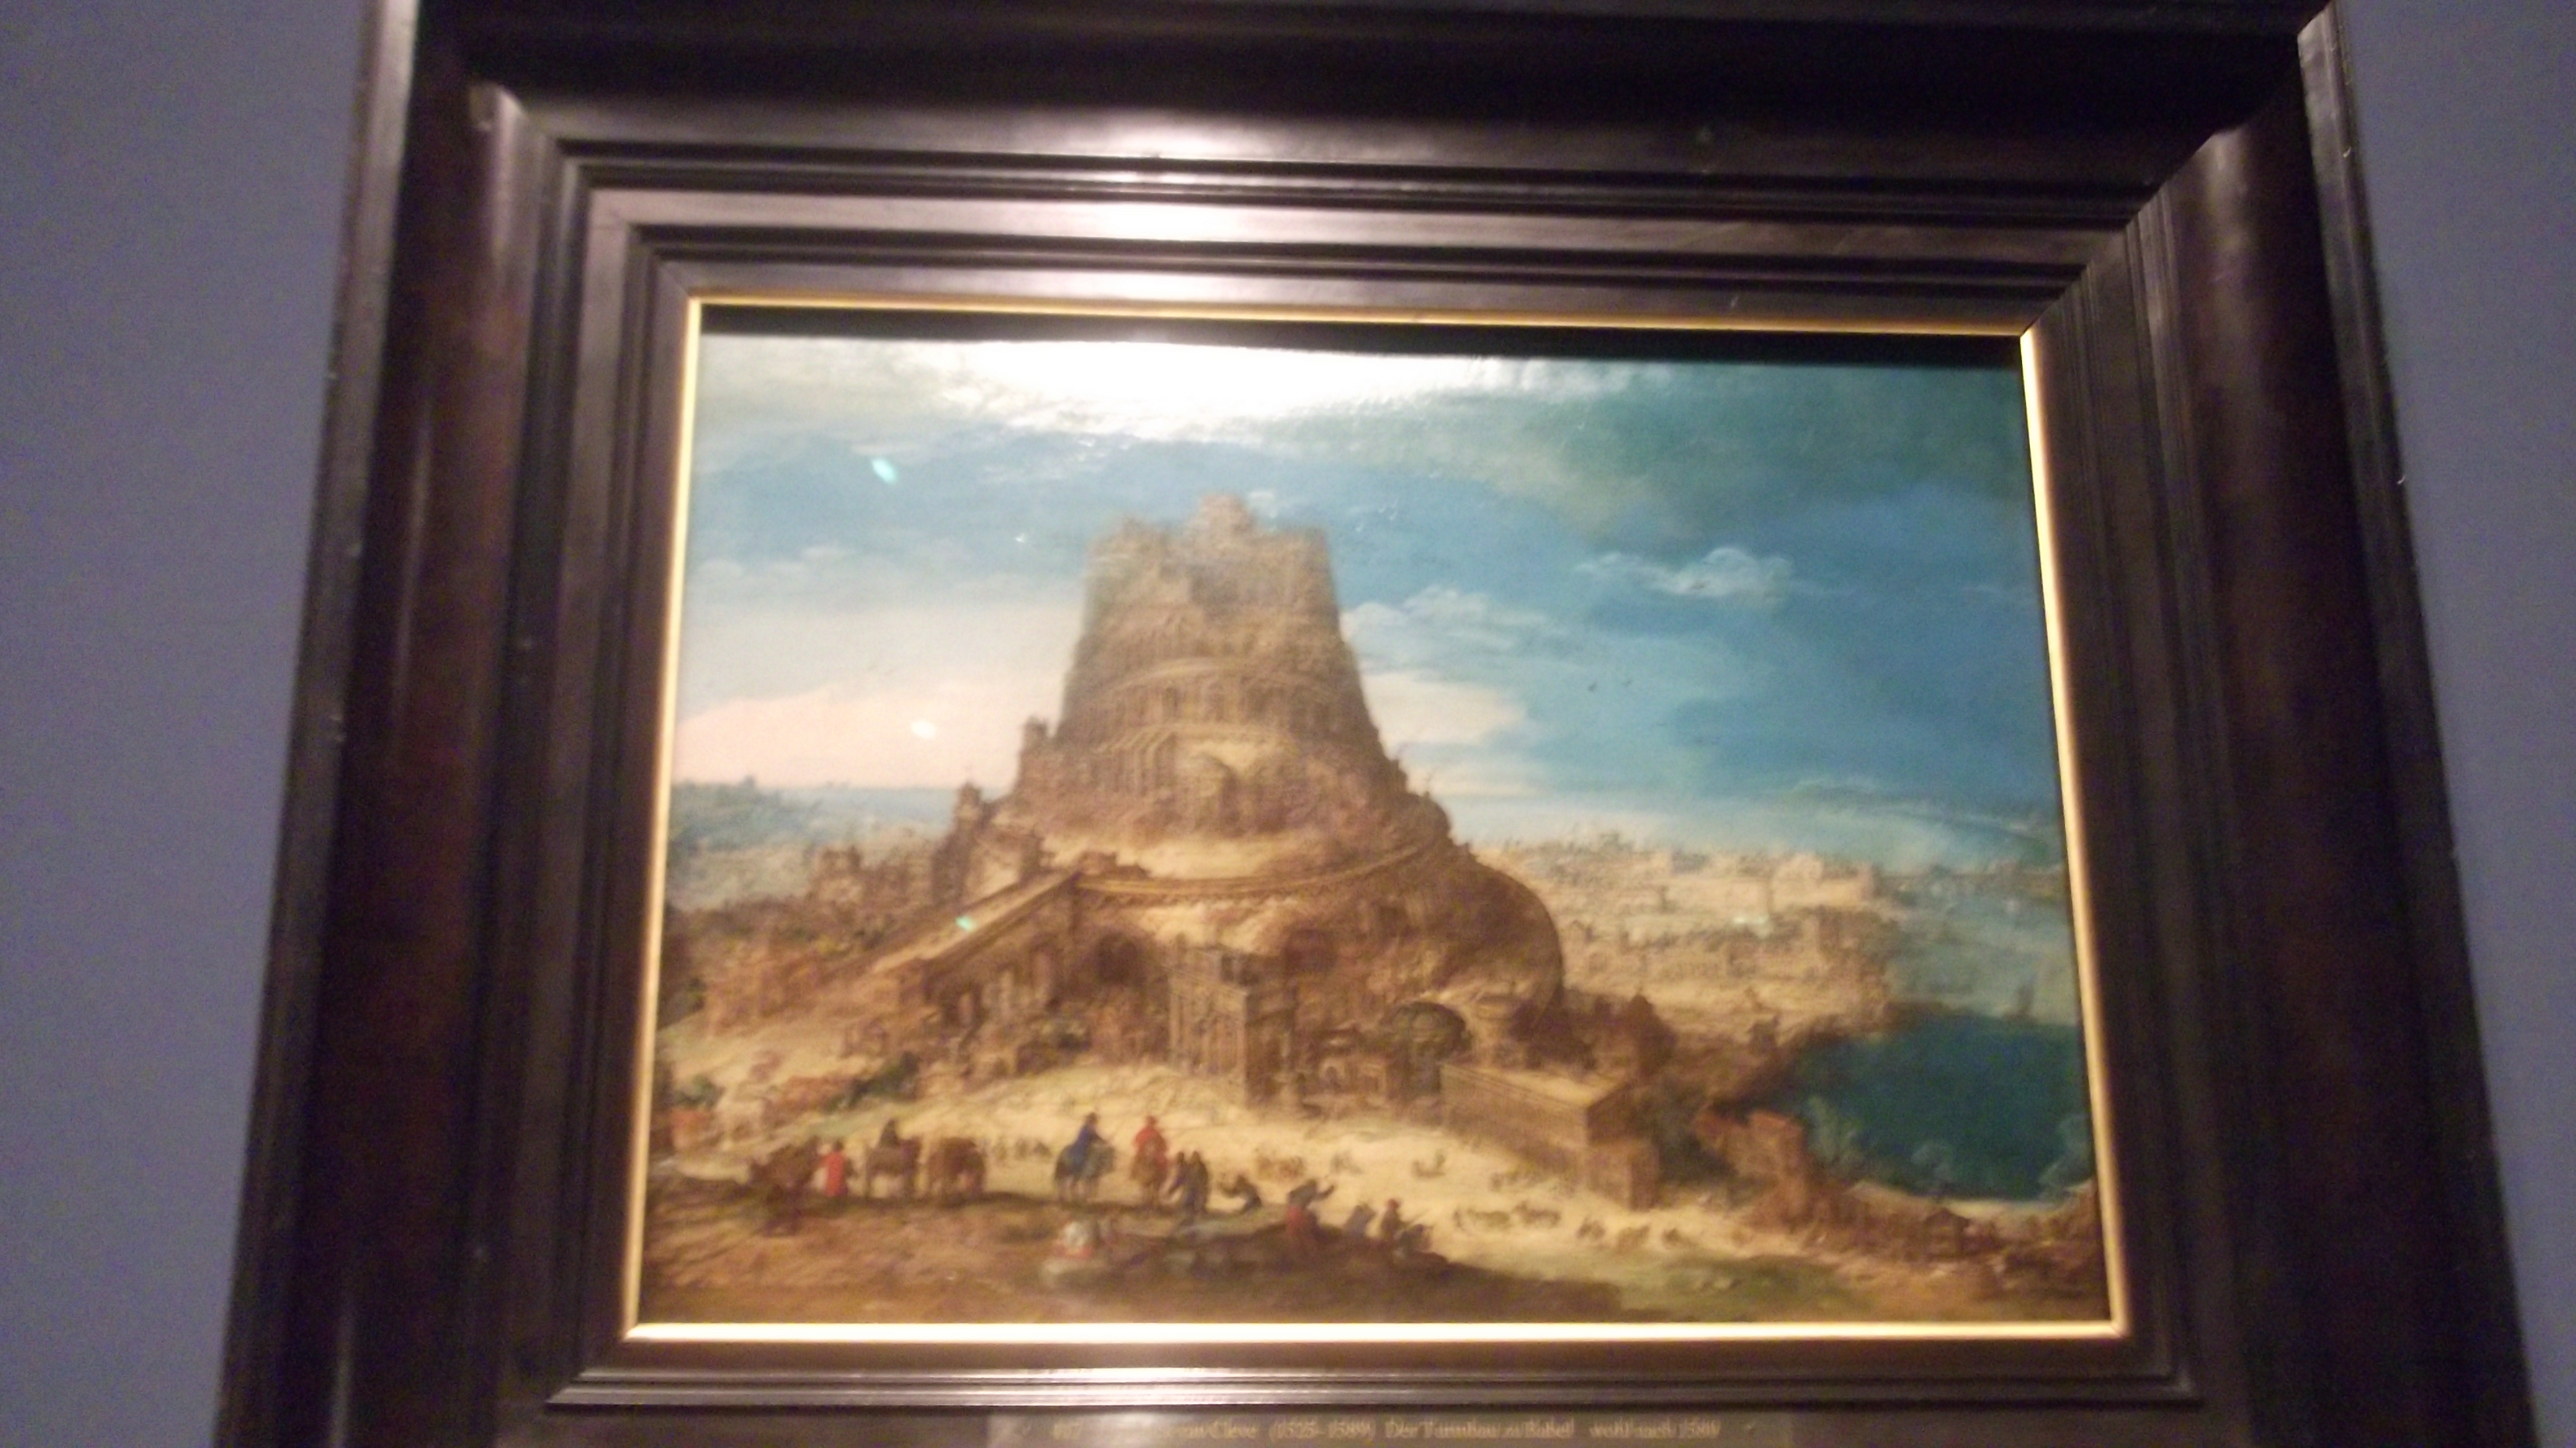 Henrik van Cleve III. der Turm zu Babel